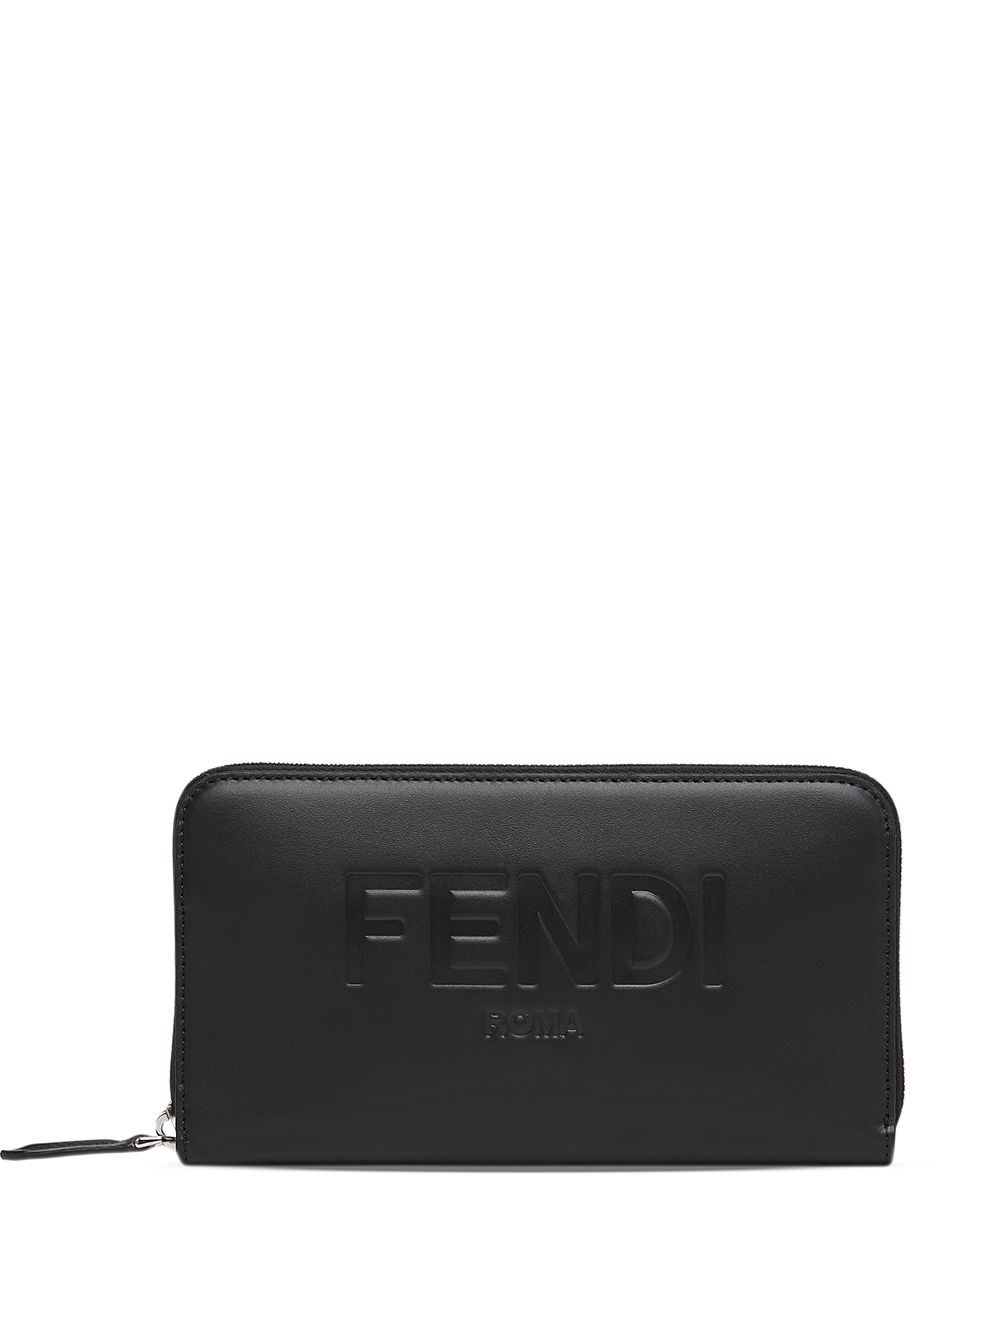 Fendi Zipped Wallet In Black